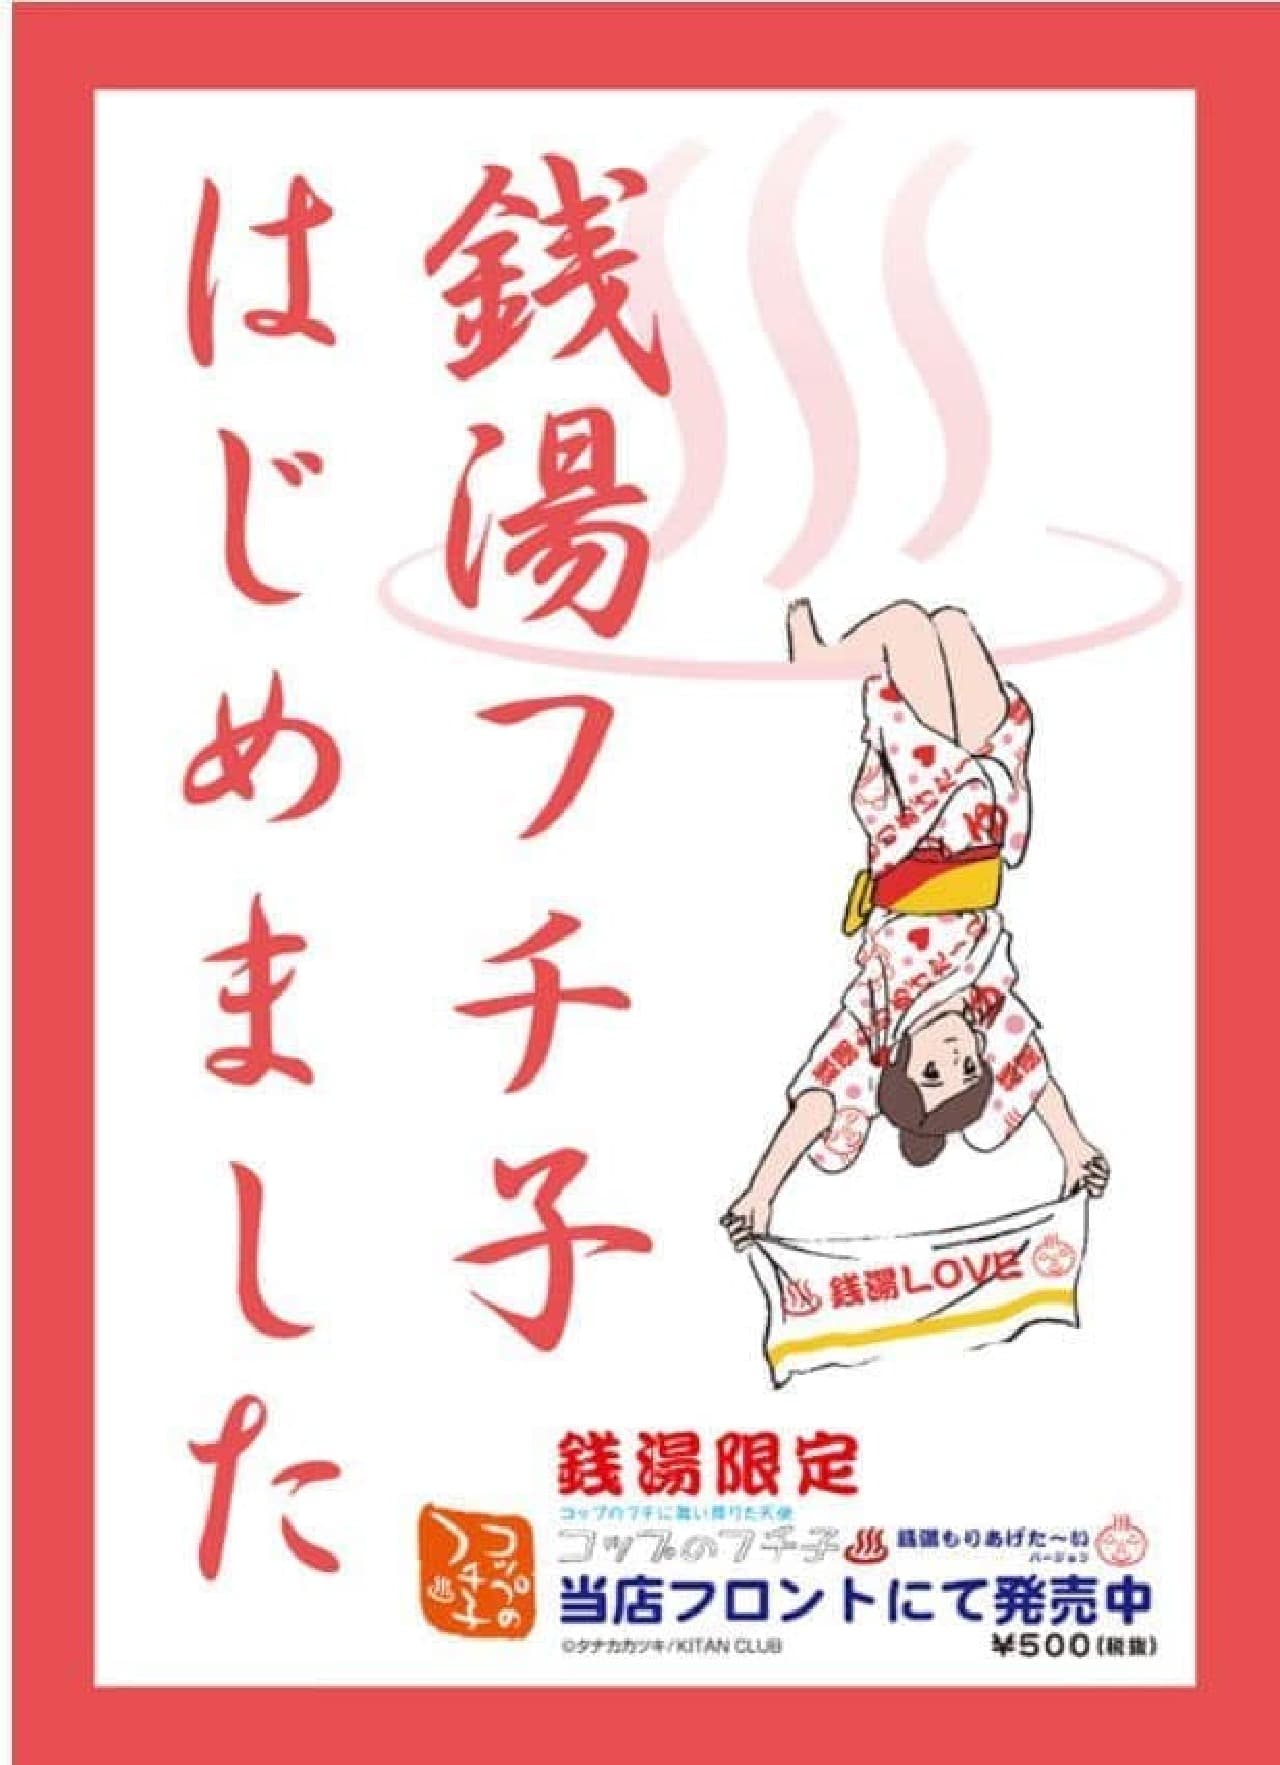 「銭湯限定コップのフチ子」3月26日発売